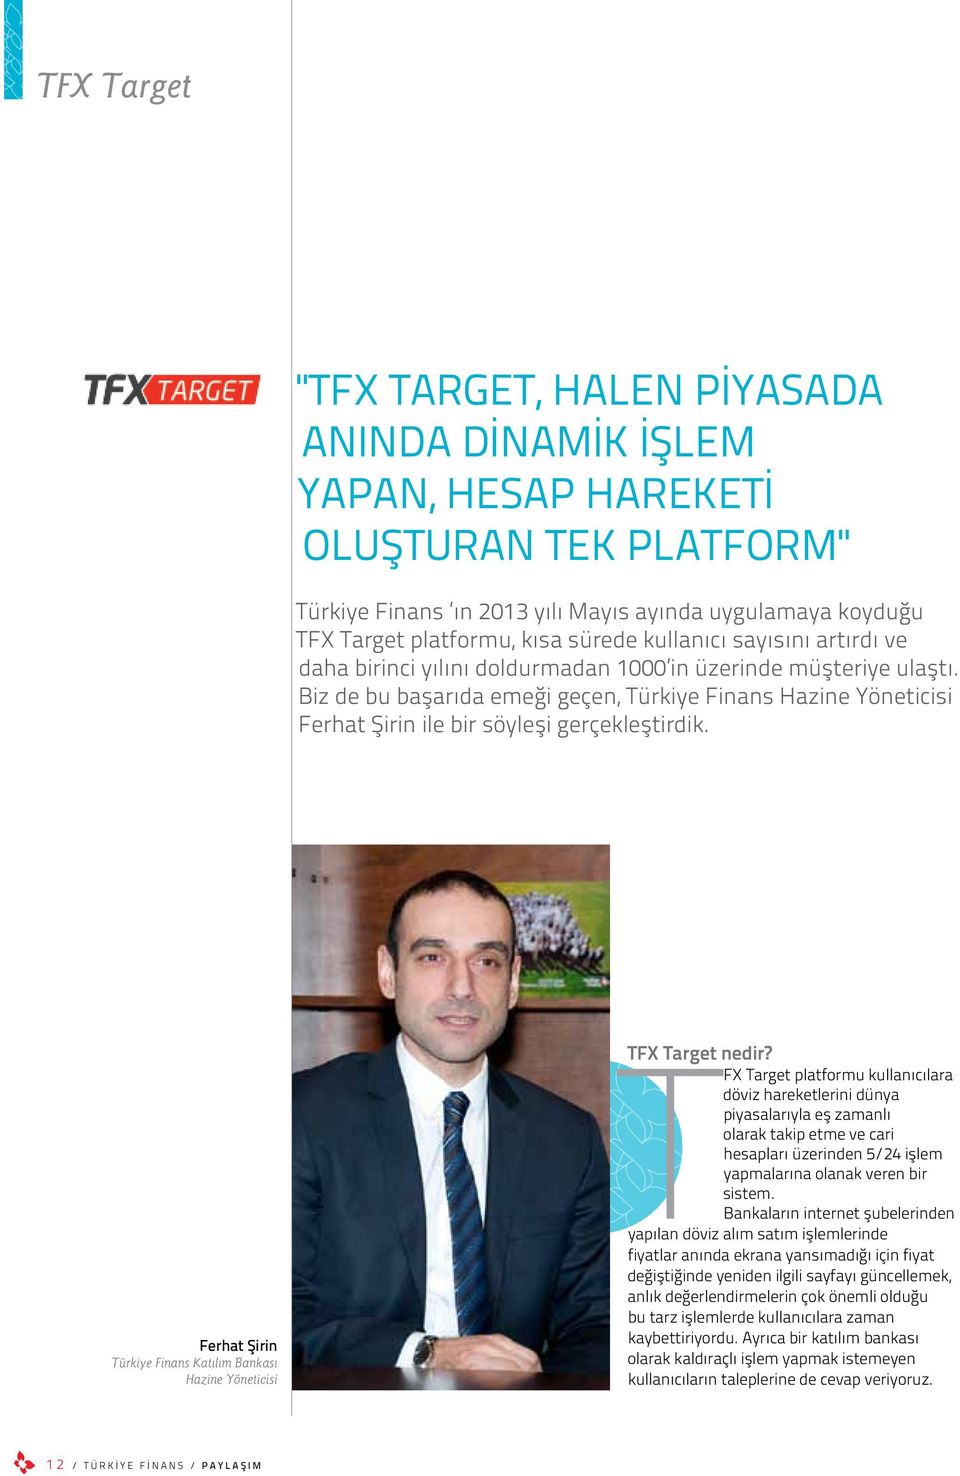 Biz de bu başarıda emeği geçen, Türkiye Finans Hazine Yöneticisi Ferhat Şirin ile bir söyleşi gerçekleştirdik. Ferhat Şirin Türkiye Finans Katılım Bankası Hazine Yöneticisi TFX Target nedir?